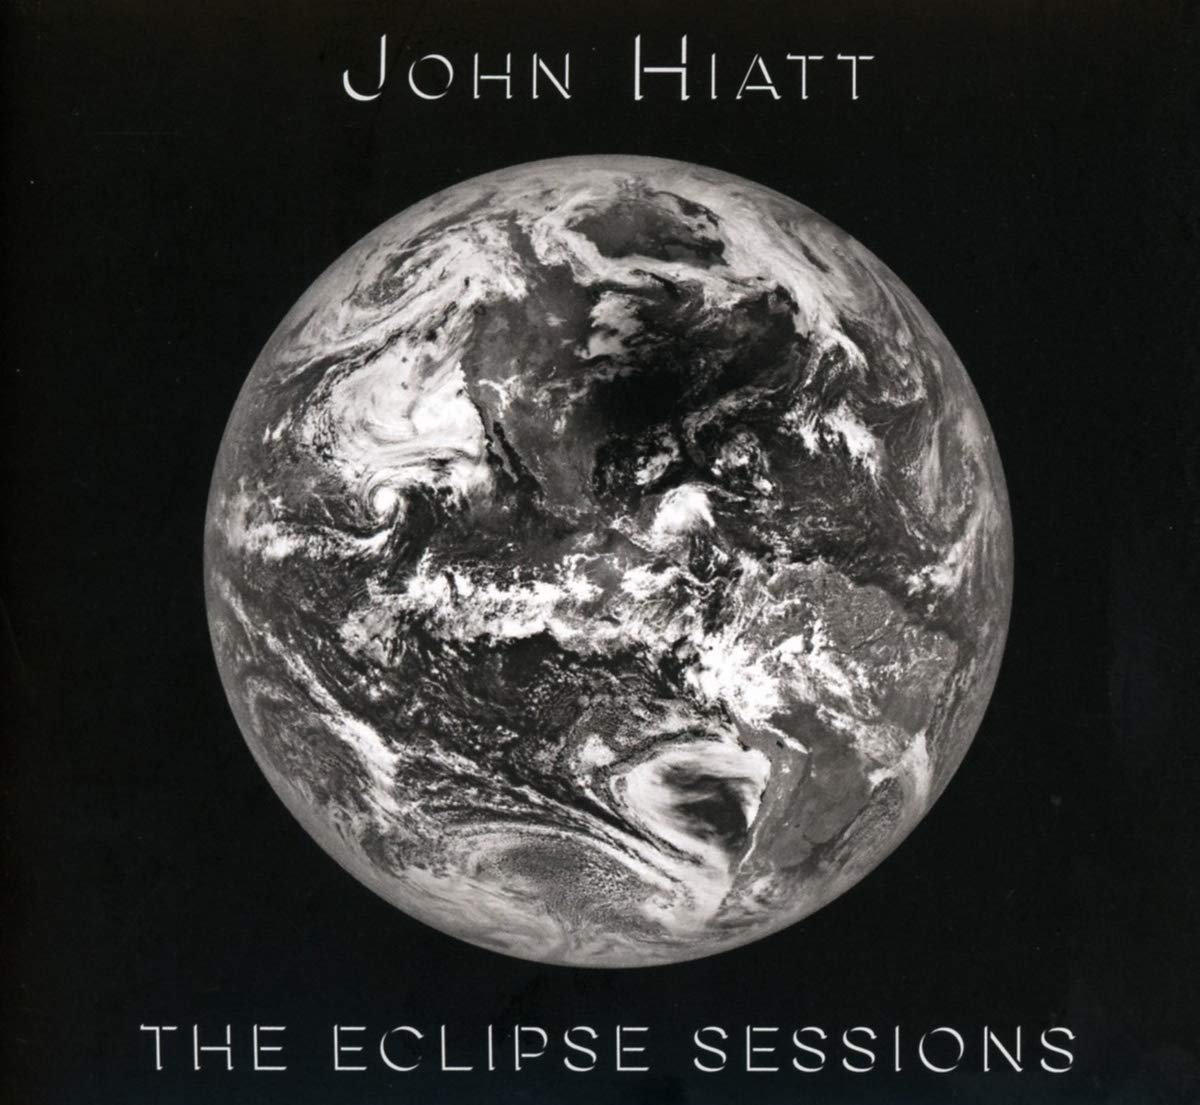 John Hiatt - The Eclipse Sessions (2018) [FLAC 24bit/44,1kHz]